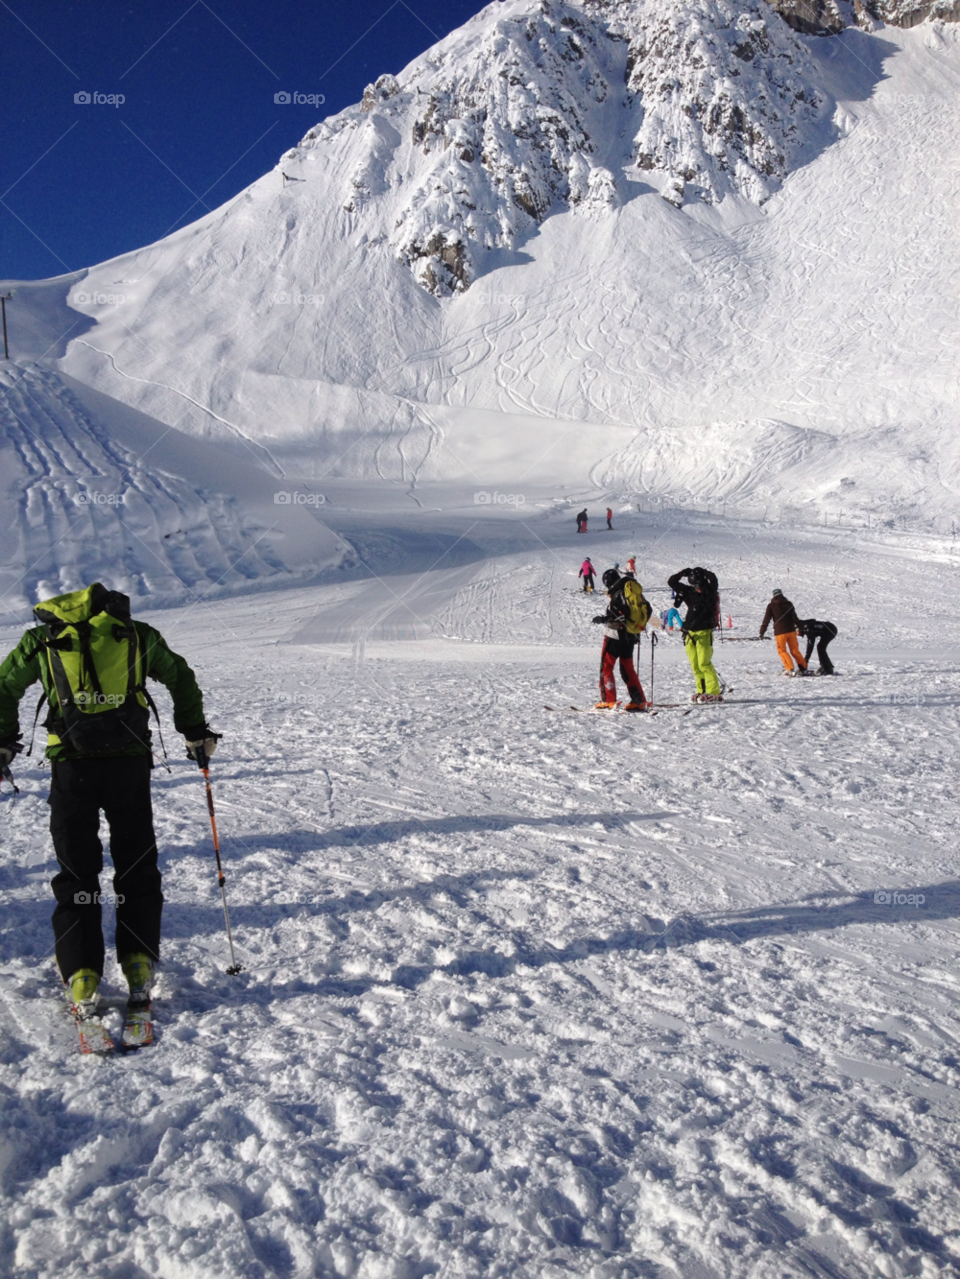 innsbruck december 2012 skier 1 skier 2 by lynn7507